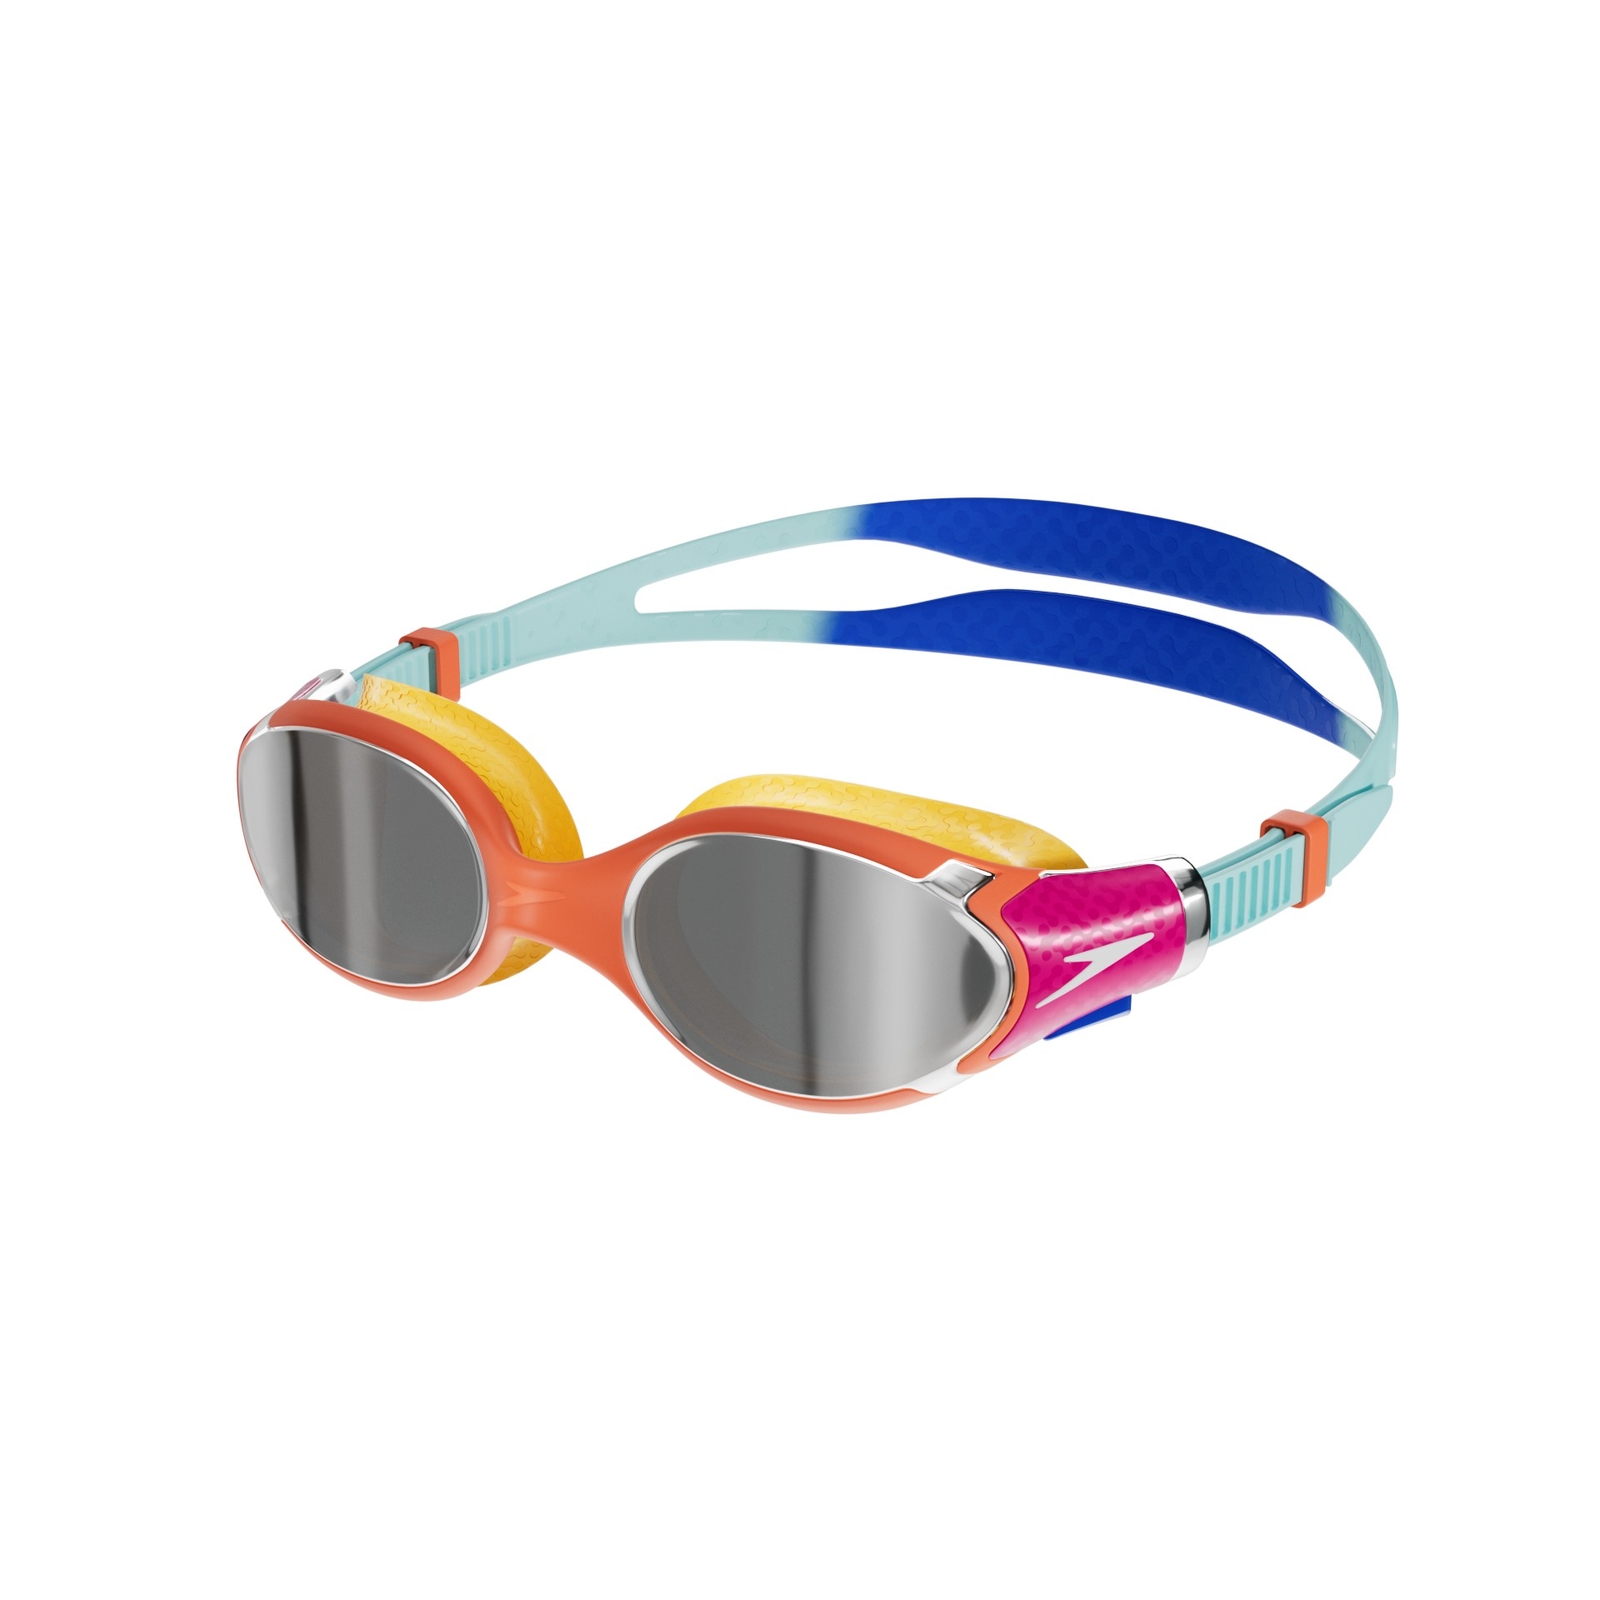 Biofuse 2.0 Mirror Junior Goggles Blue/Orange